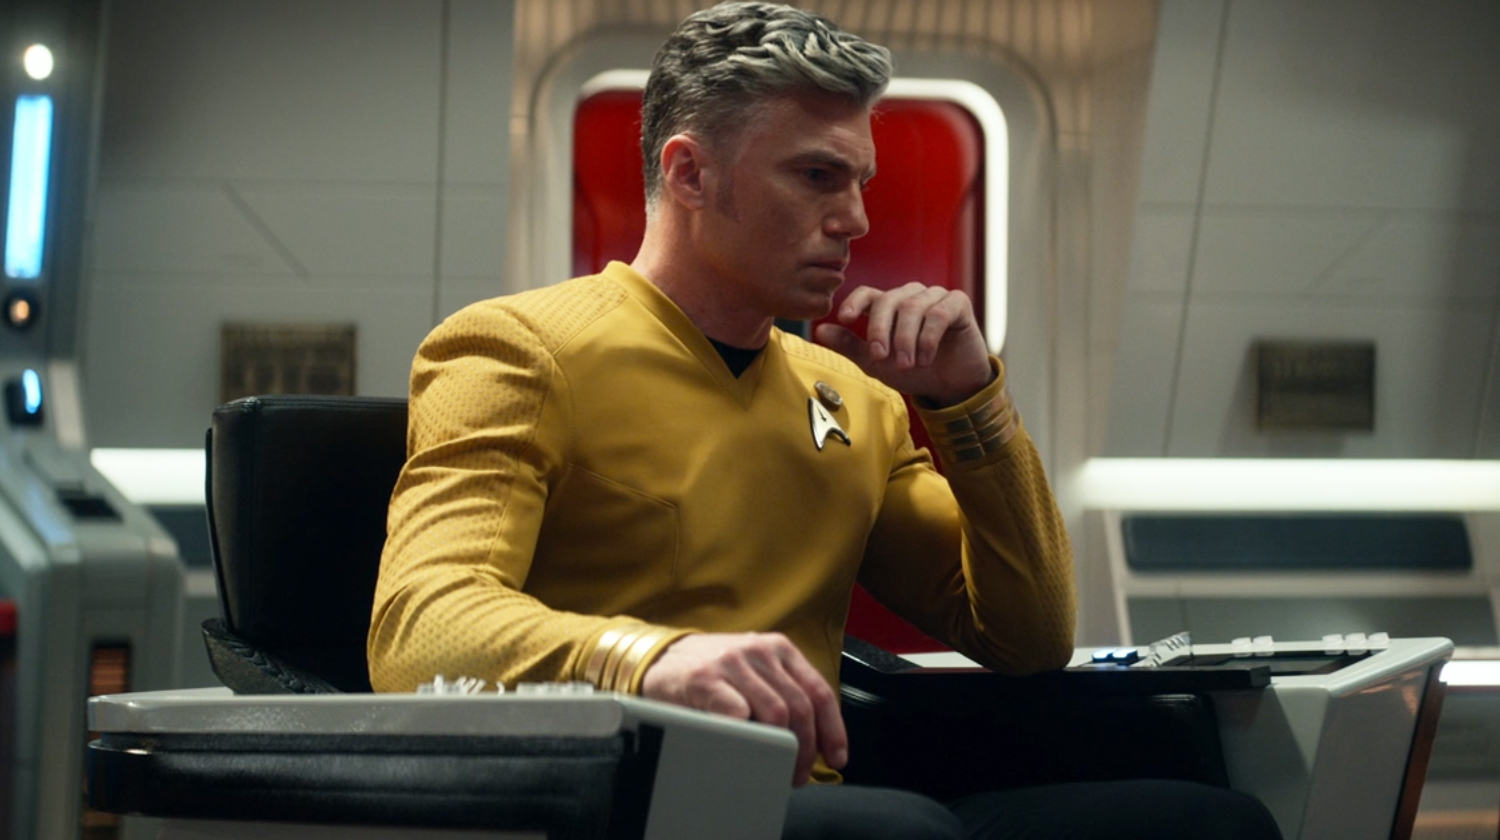 Captain Pike in the Thinker pose on Star Trek: Strange New Worlds.